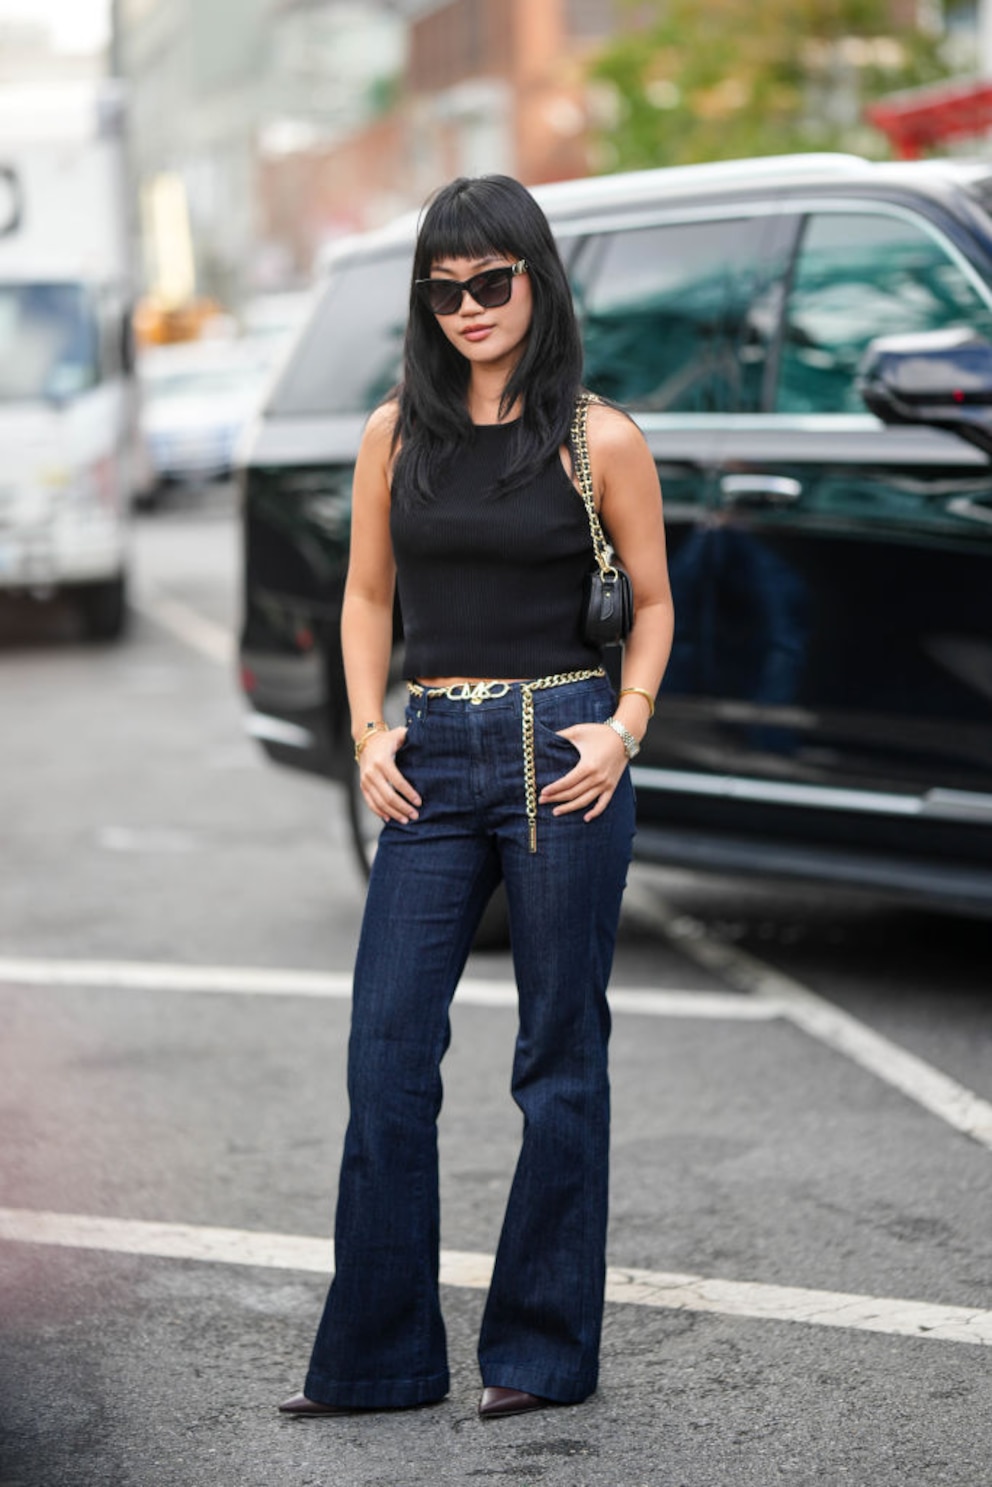 Streetstyle: Frau mit schwarzem Top und dunkelblauer Jeans